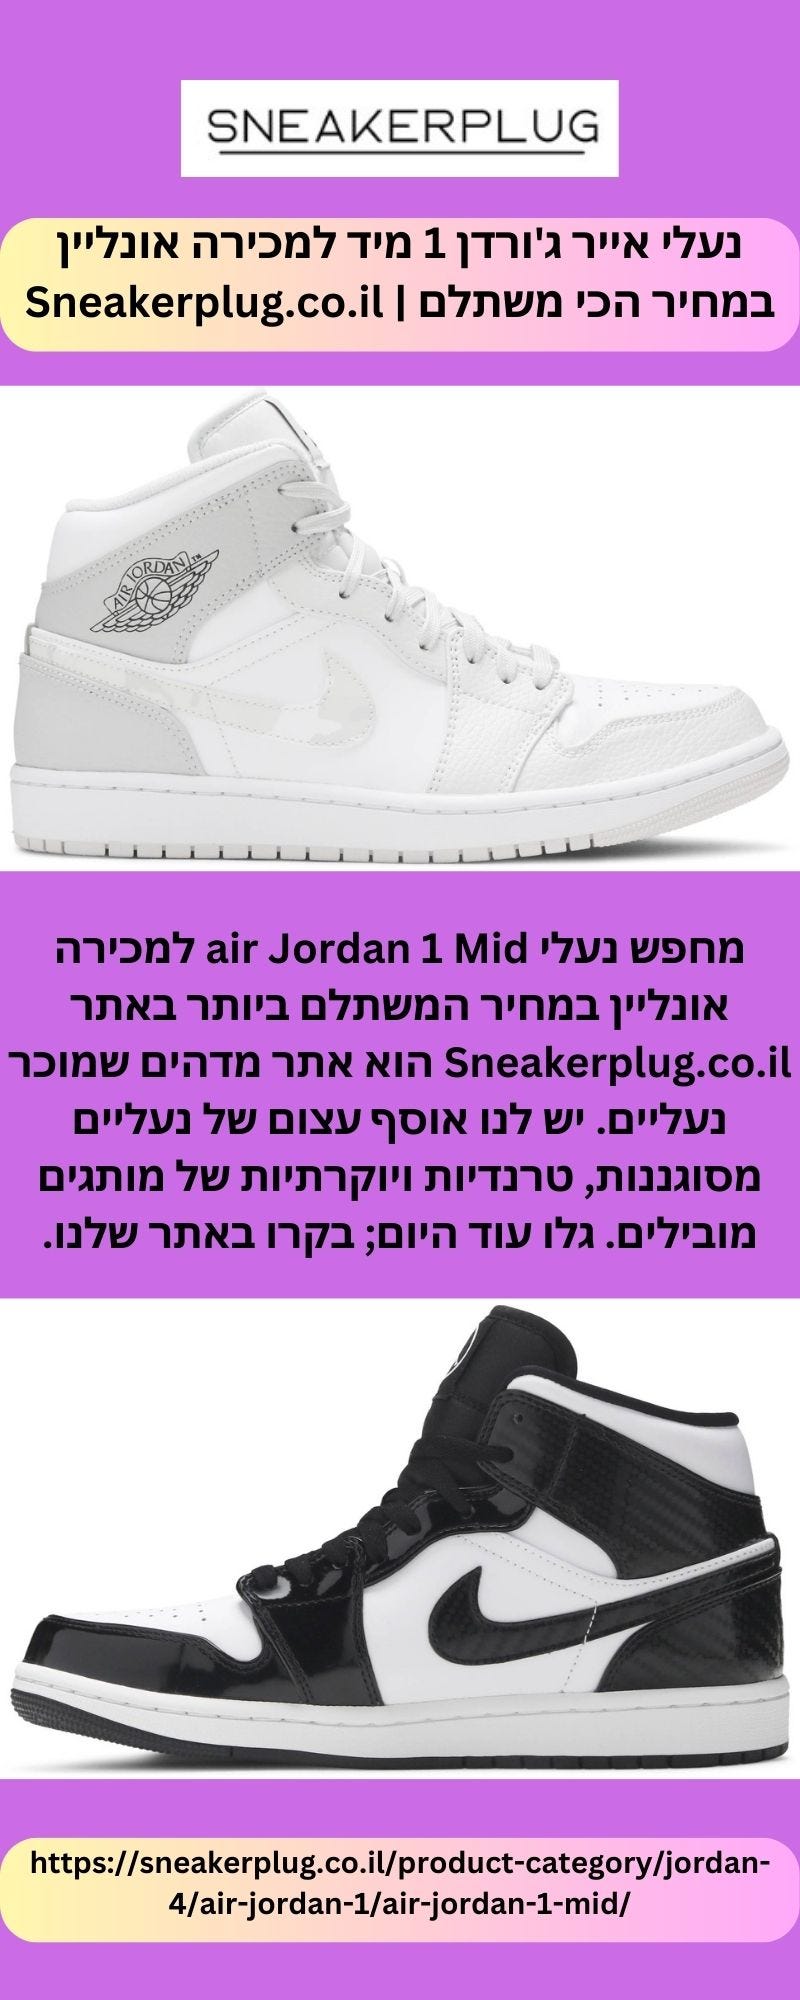 נעלי אייר ג'ורדן 1 מיד למכירה אונליין במחיר הכי משתלם | Sneakerplug.co.il -  SNEAKERPLUG - Medium